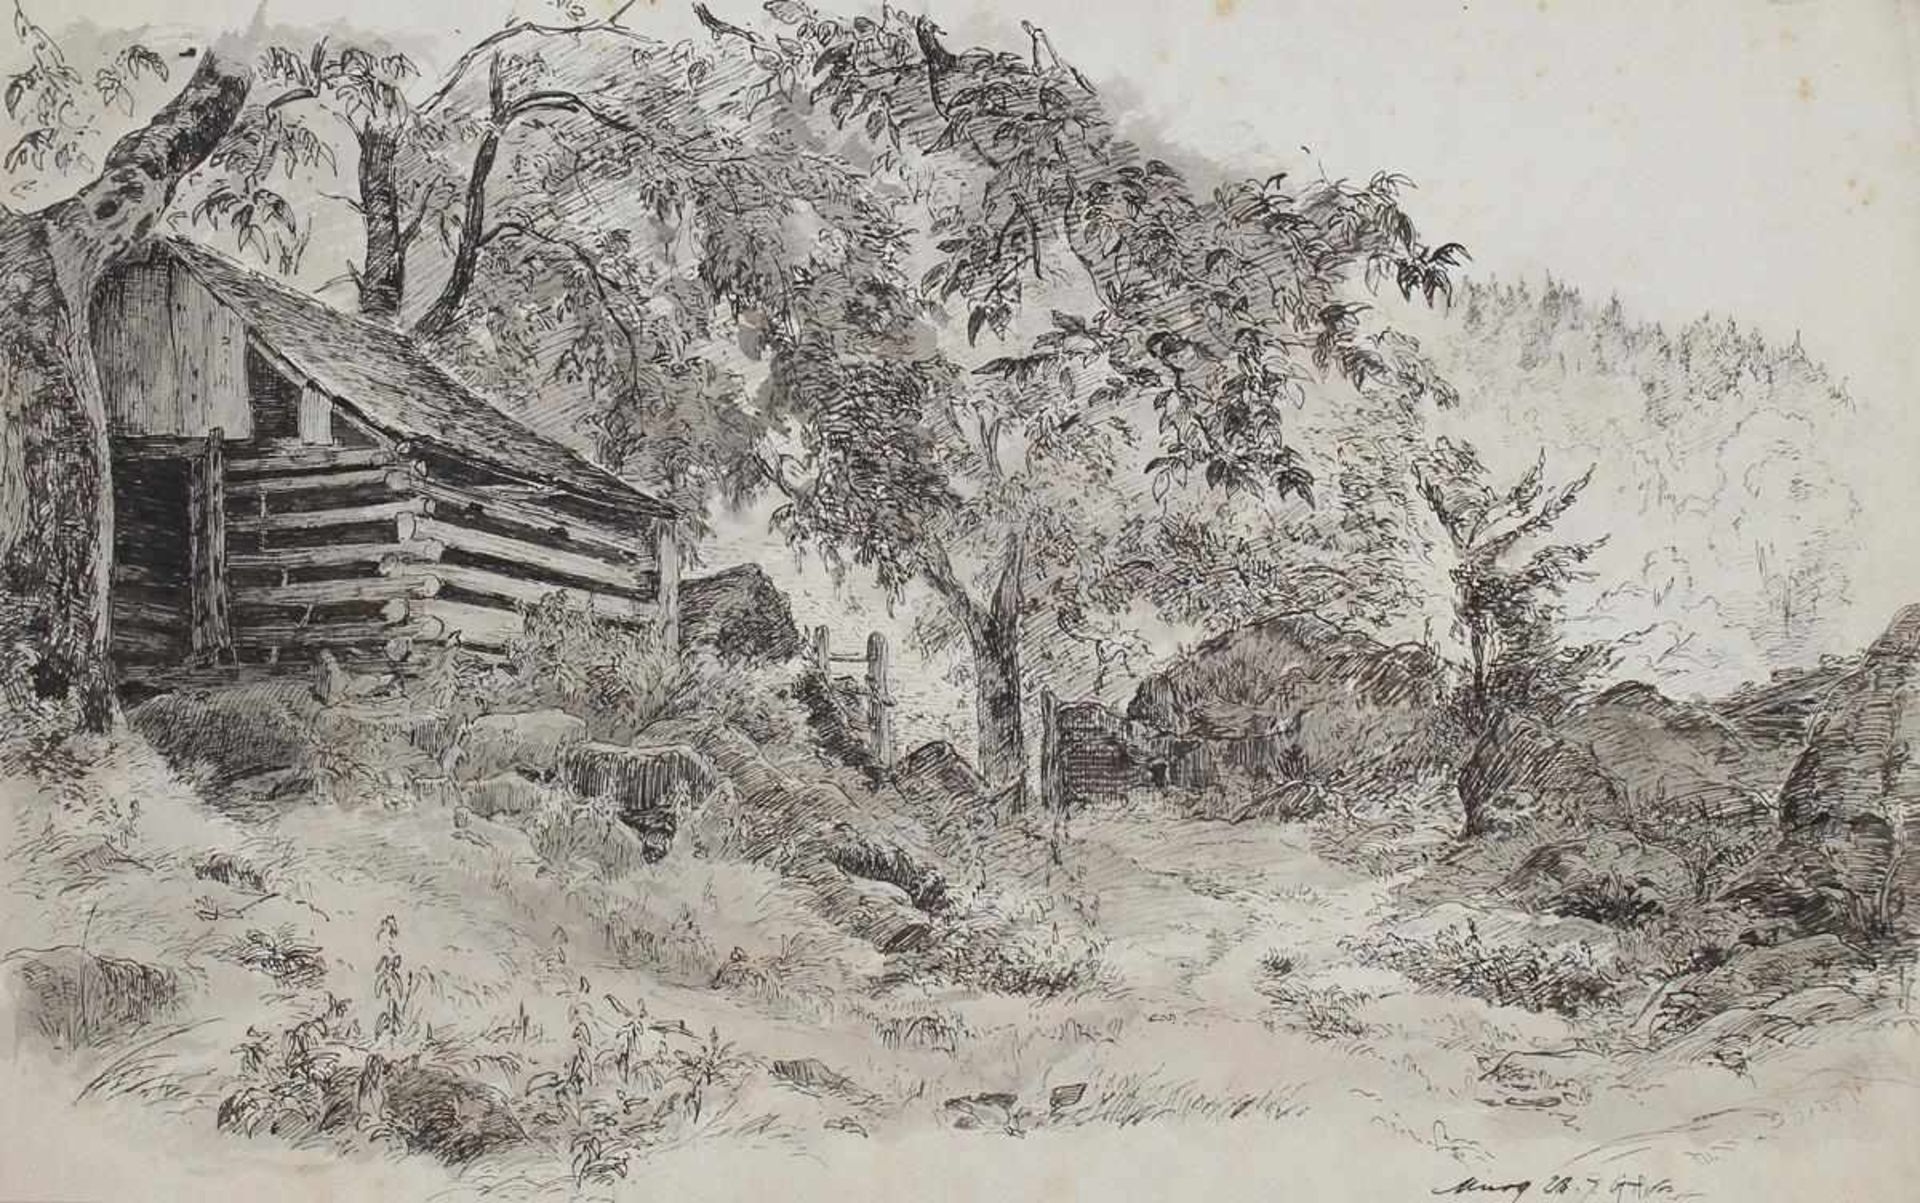 Murg.Landschaft mit Holzhütte, Steinen u. Laubbäumen, im Hintergrund Nadelwald. Lavierte